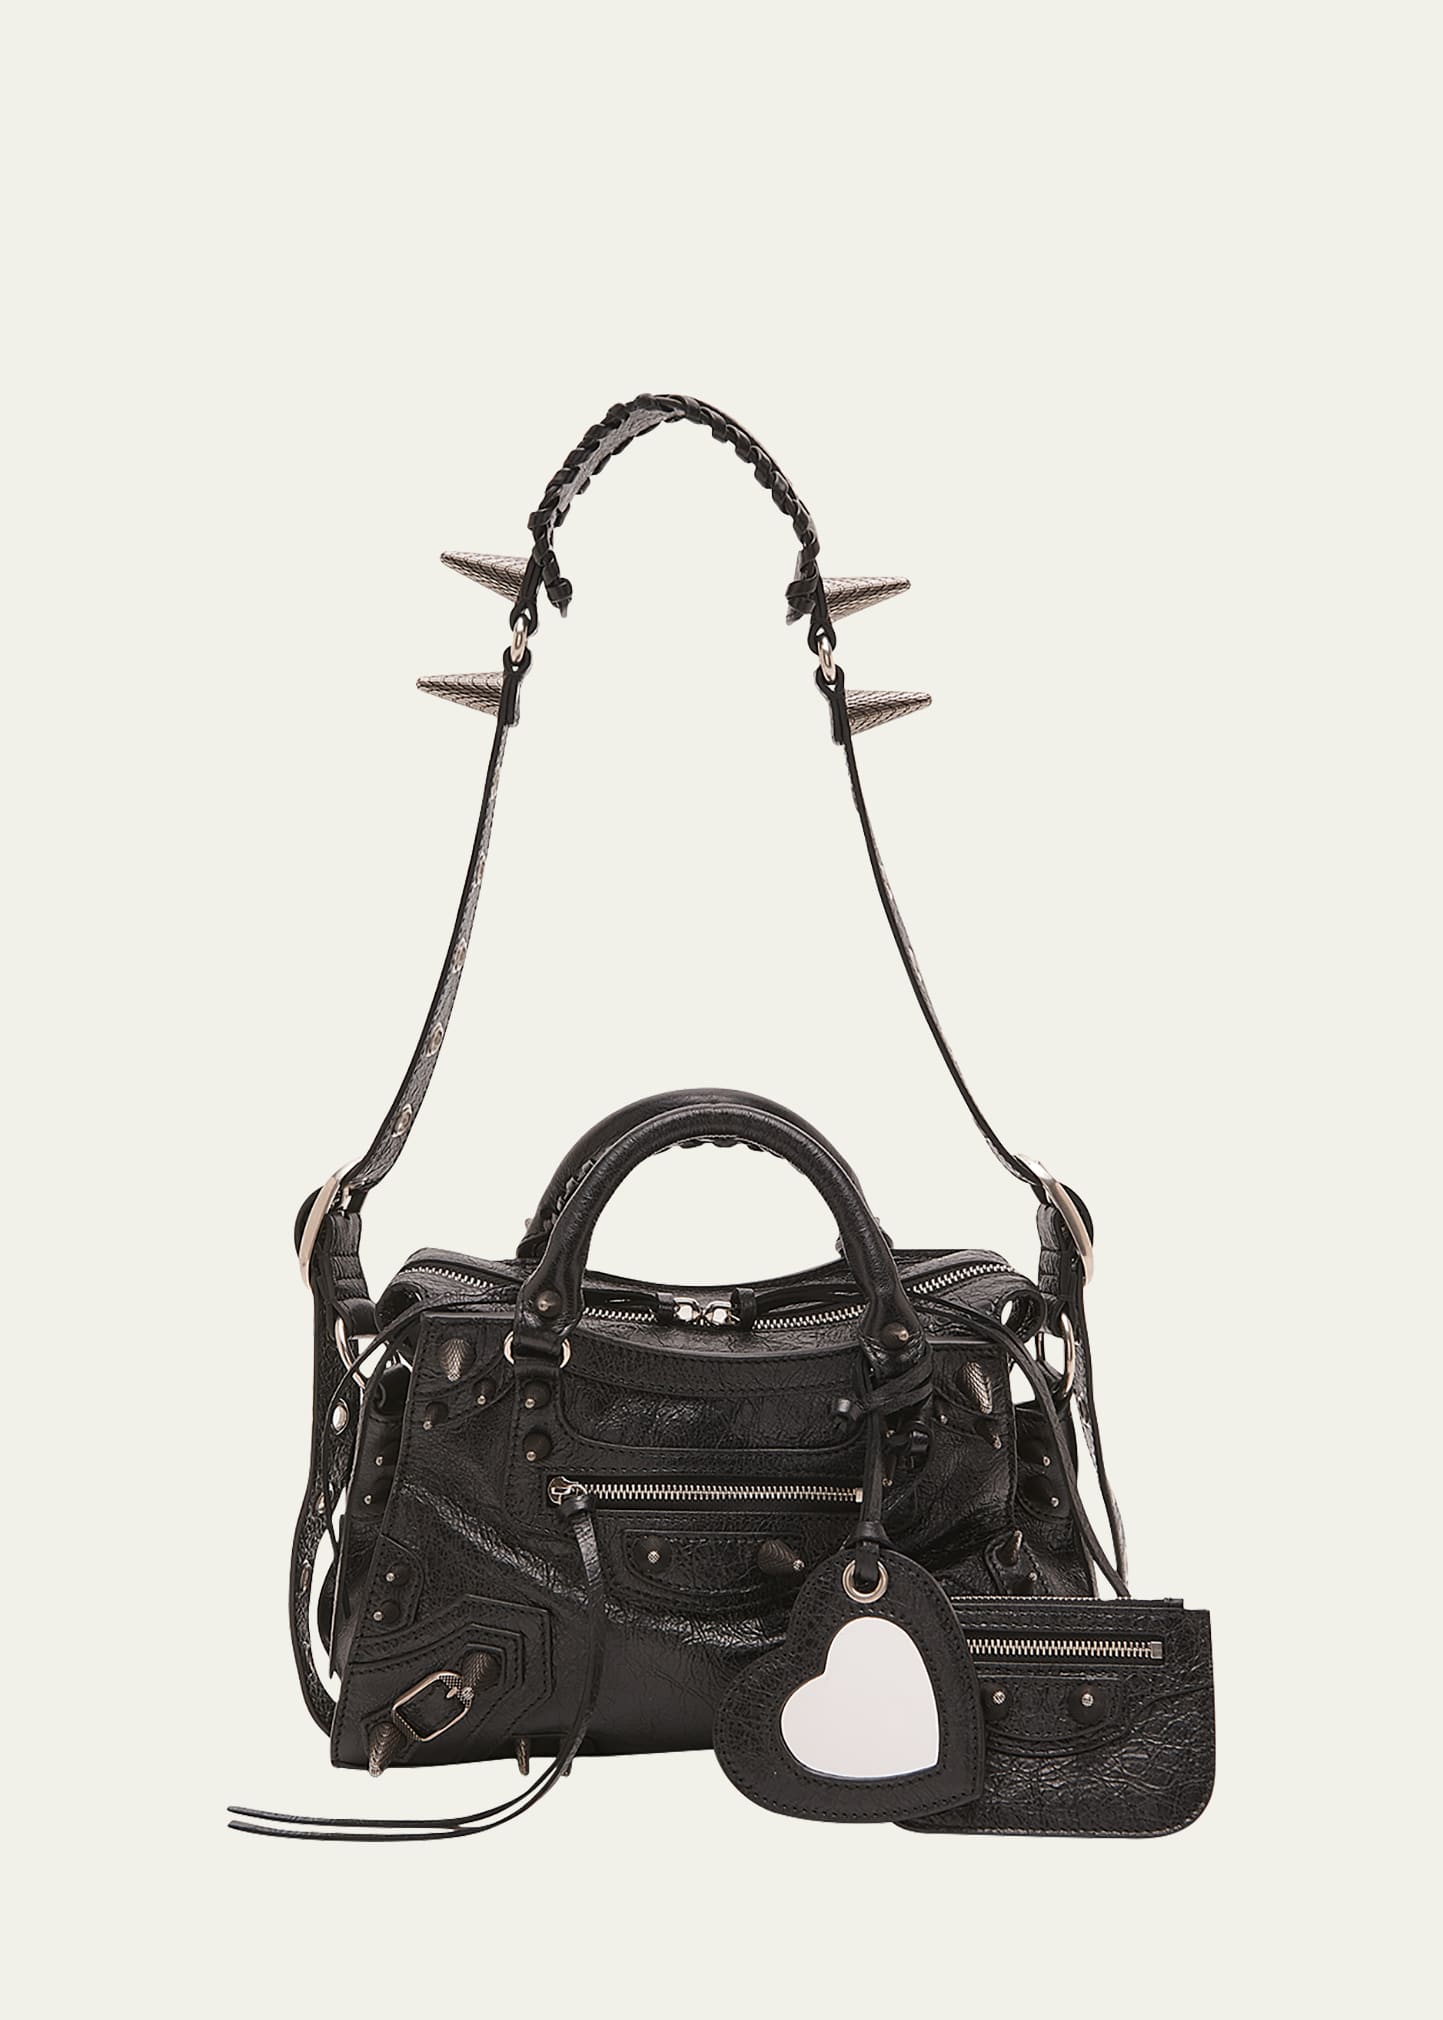 Balenciaga Neo Cagole City Leather Shoulder Bag